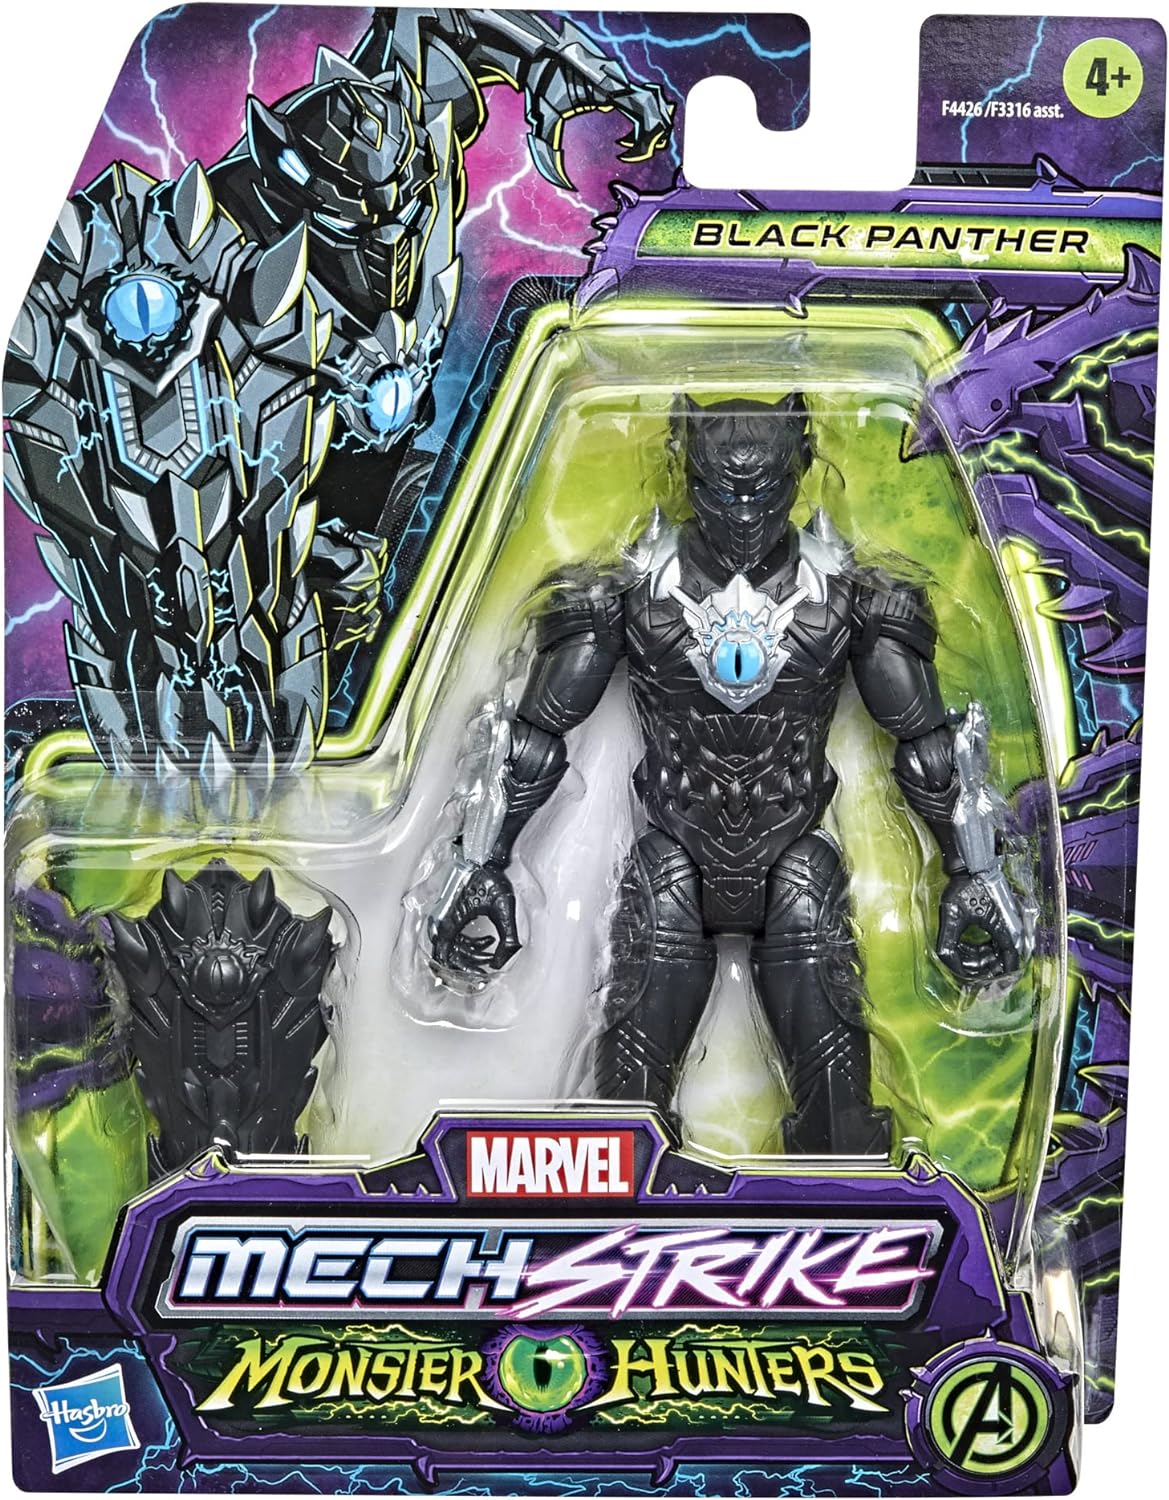 Marvel - Avengers Mech Strike Monster Hunters - Black Panther